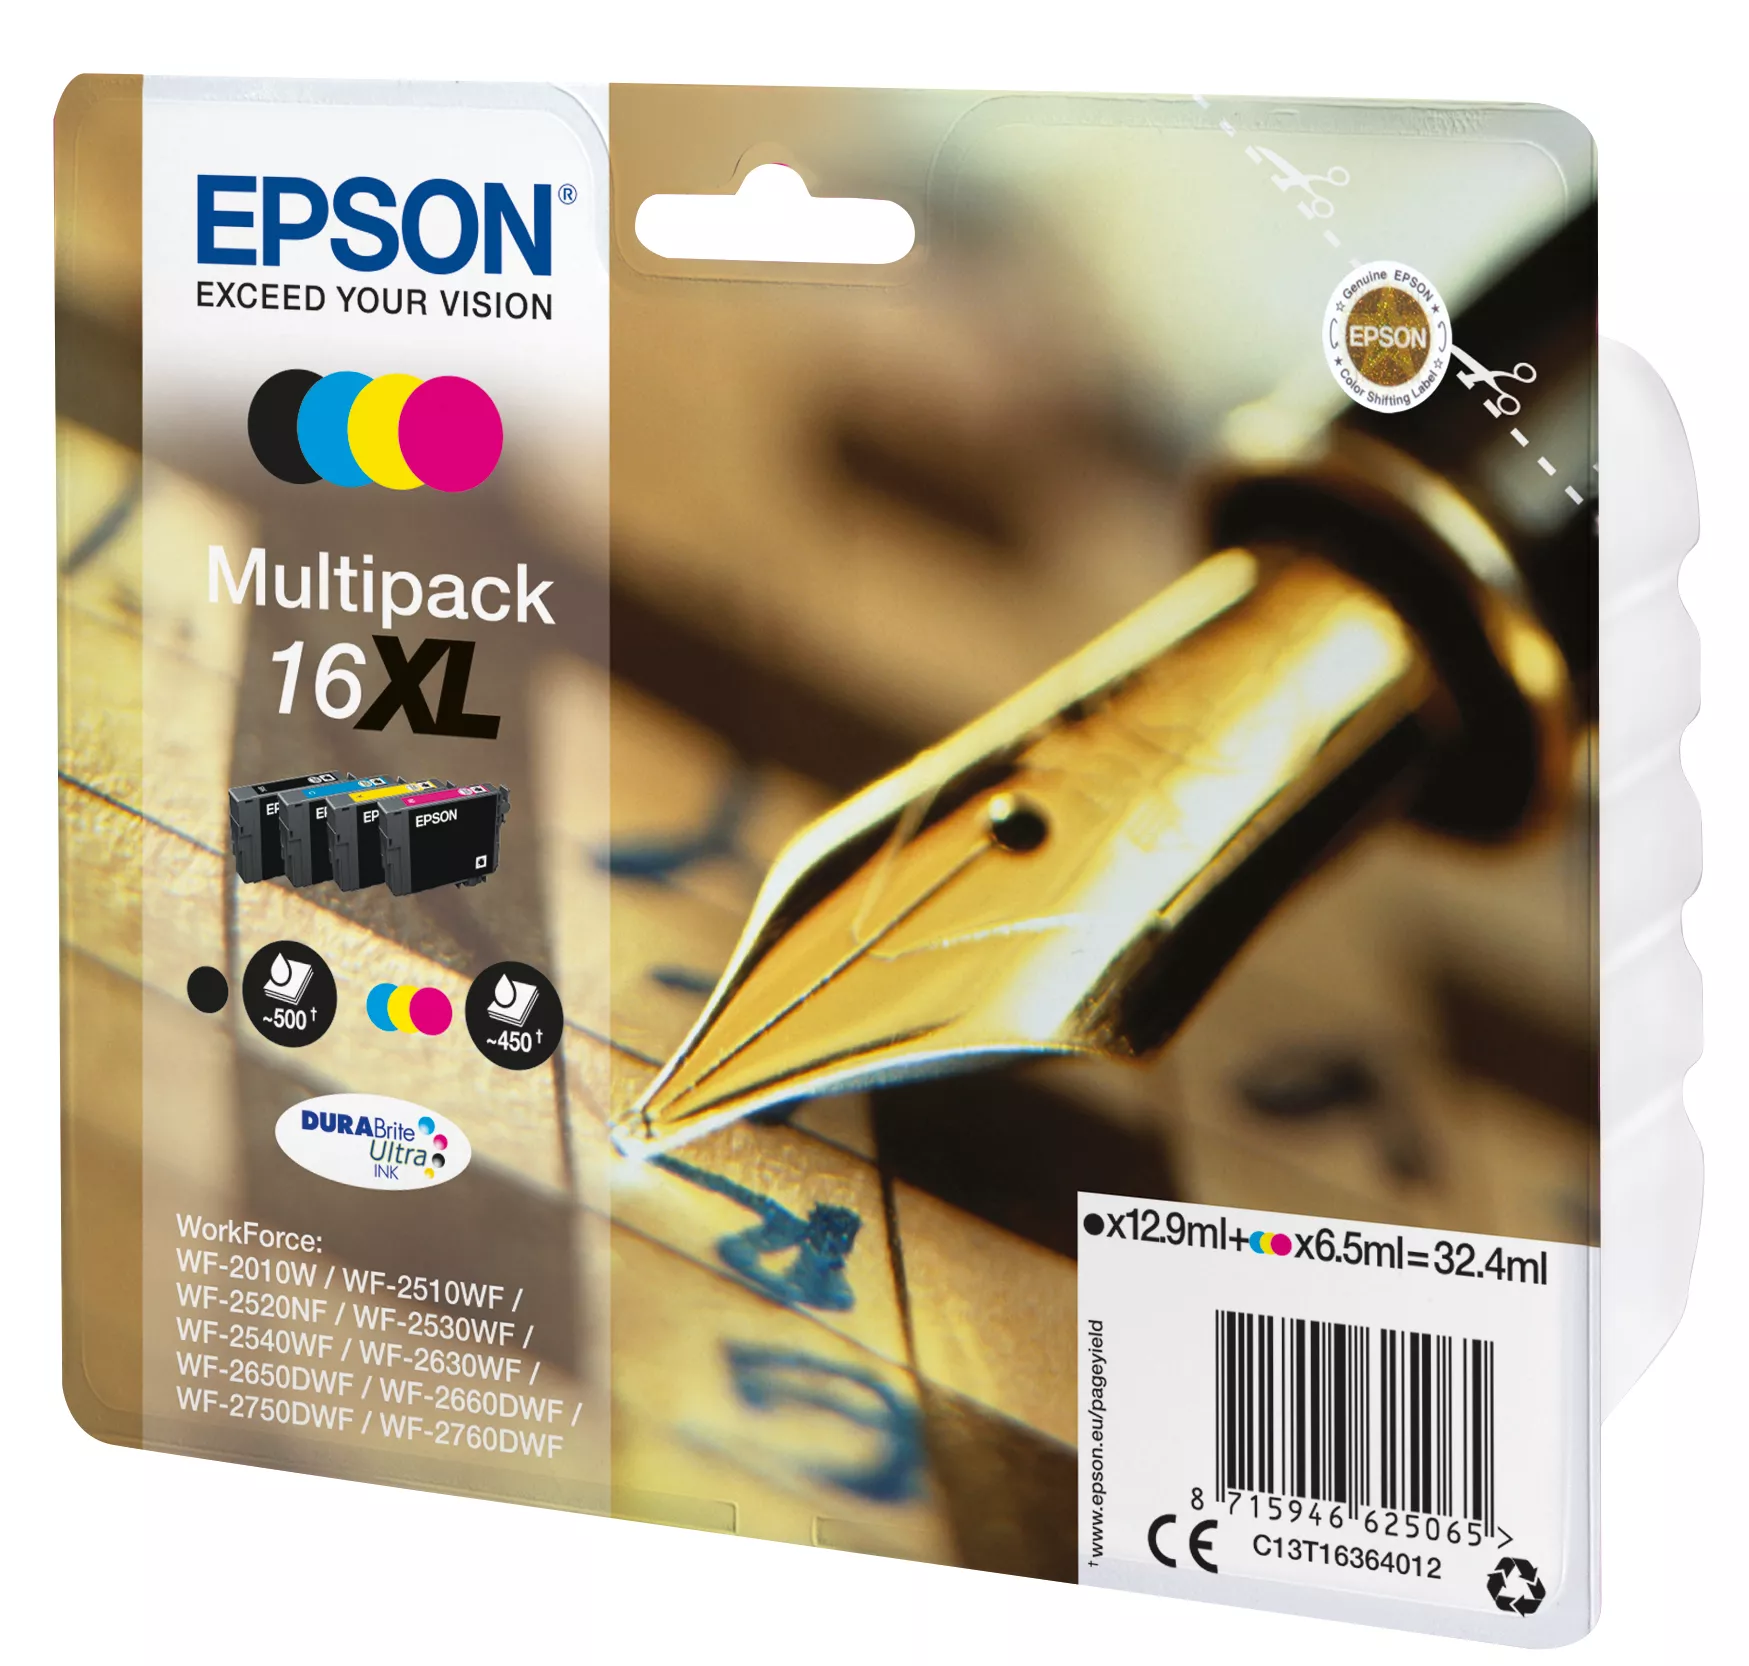 Vente EPSON 16XL cartouche dencre noir et tricolore haute Epson au meilleur prix - visuel 2